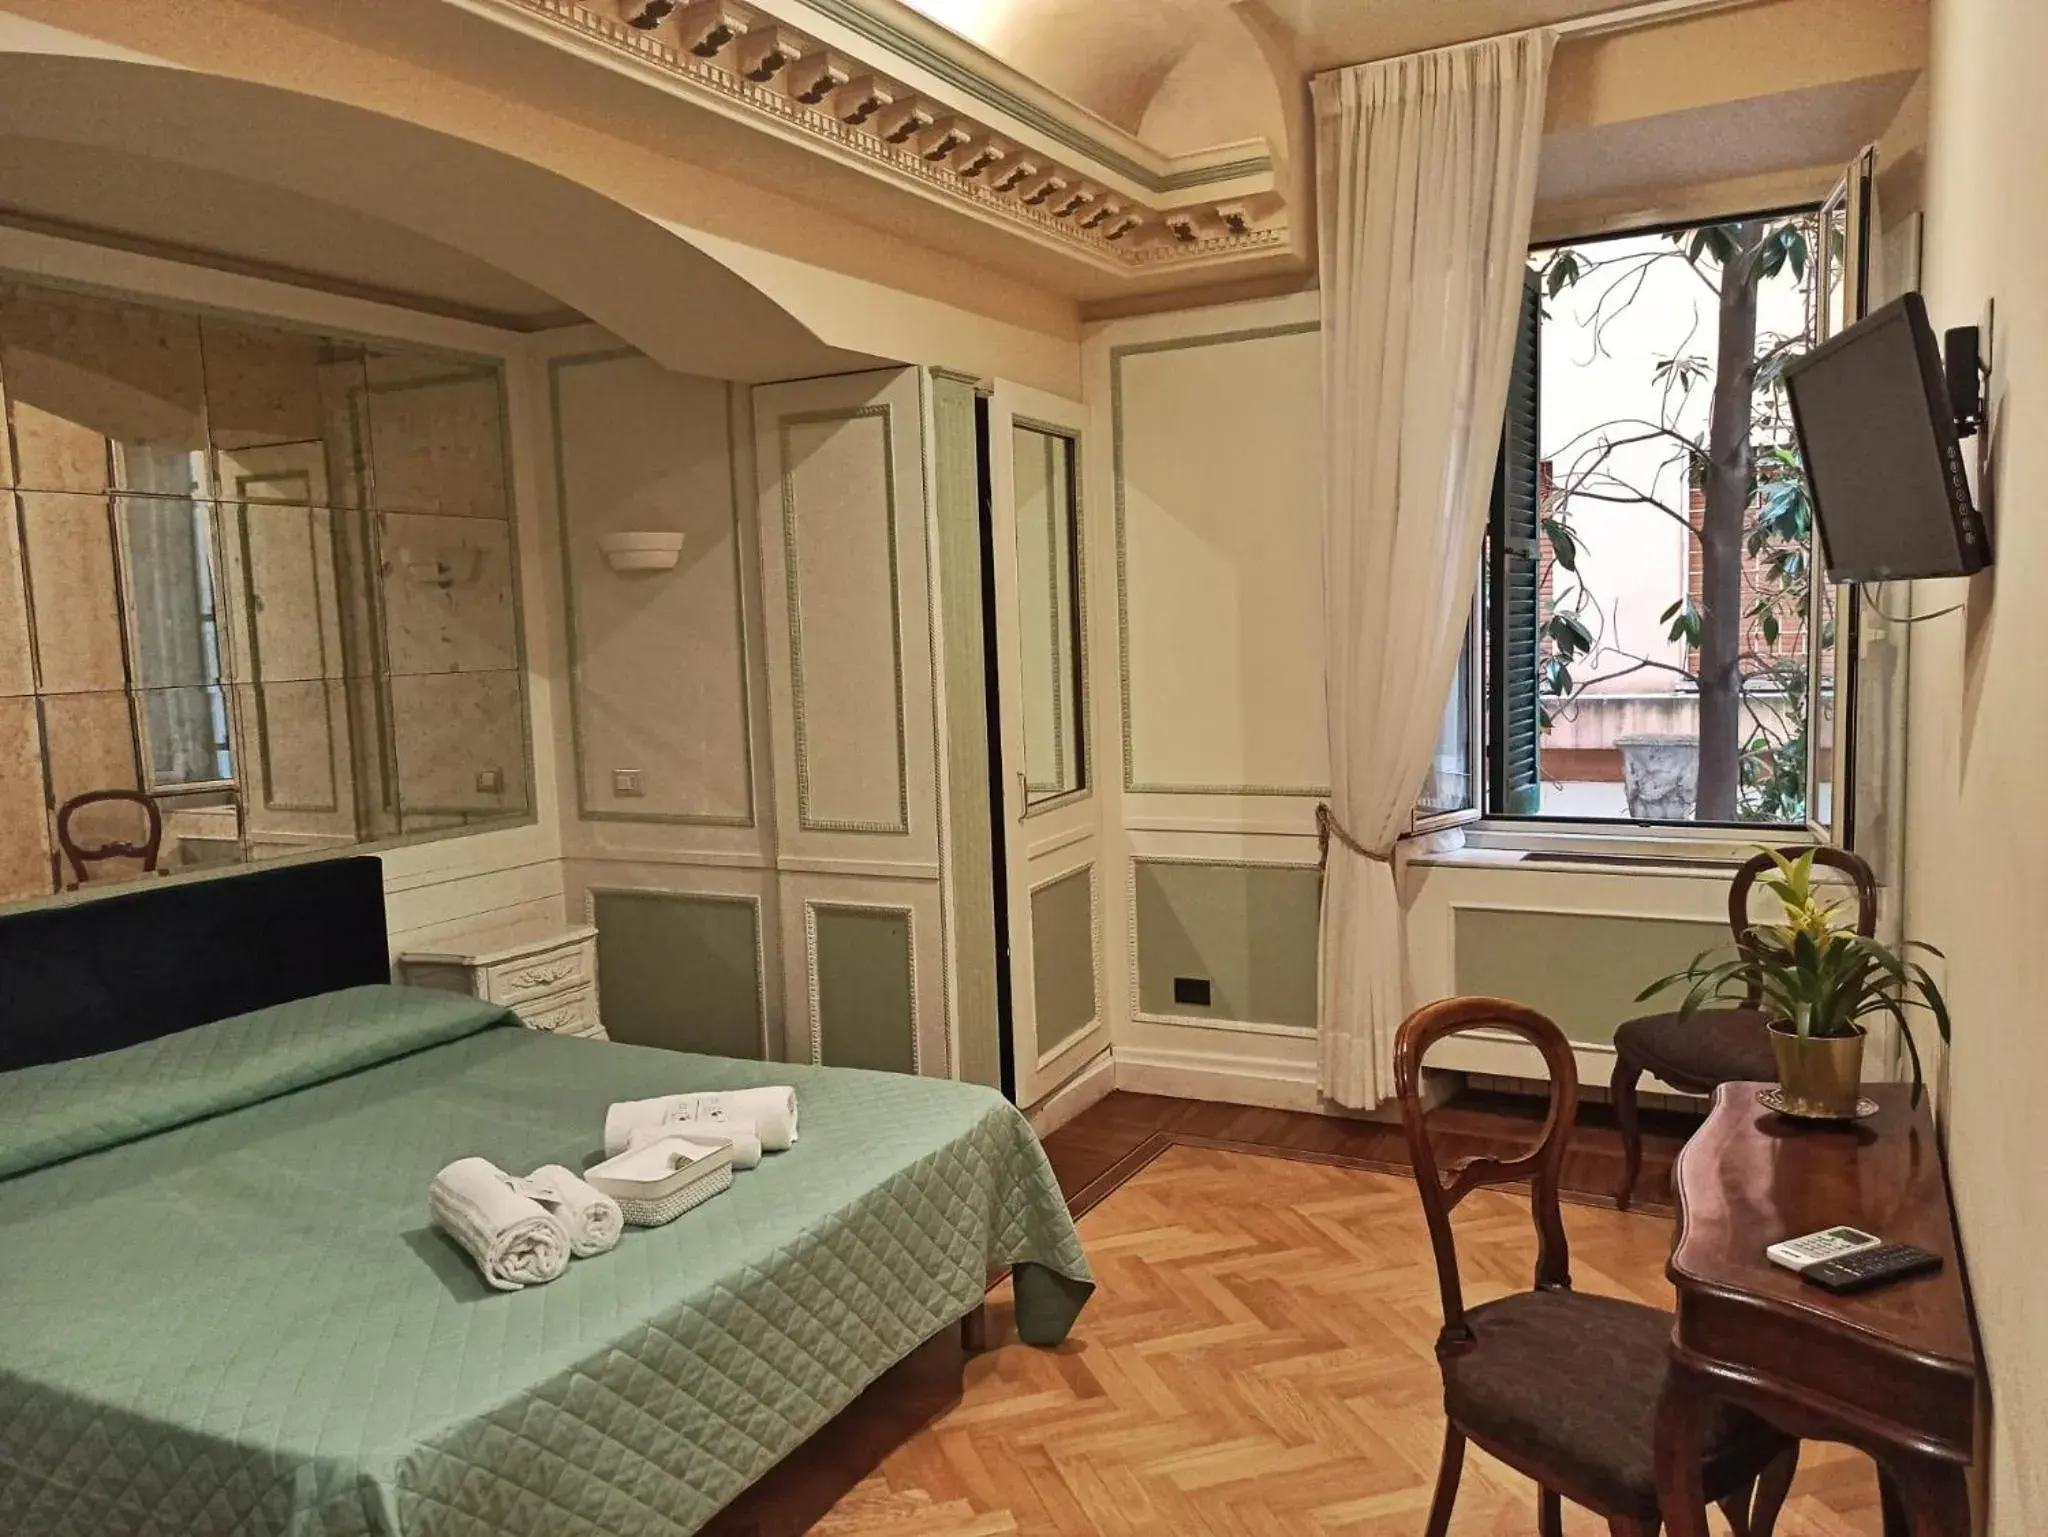 Bedroom in Domina Popolo